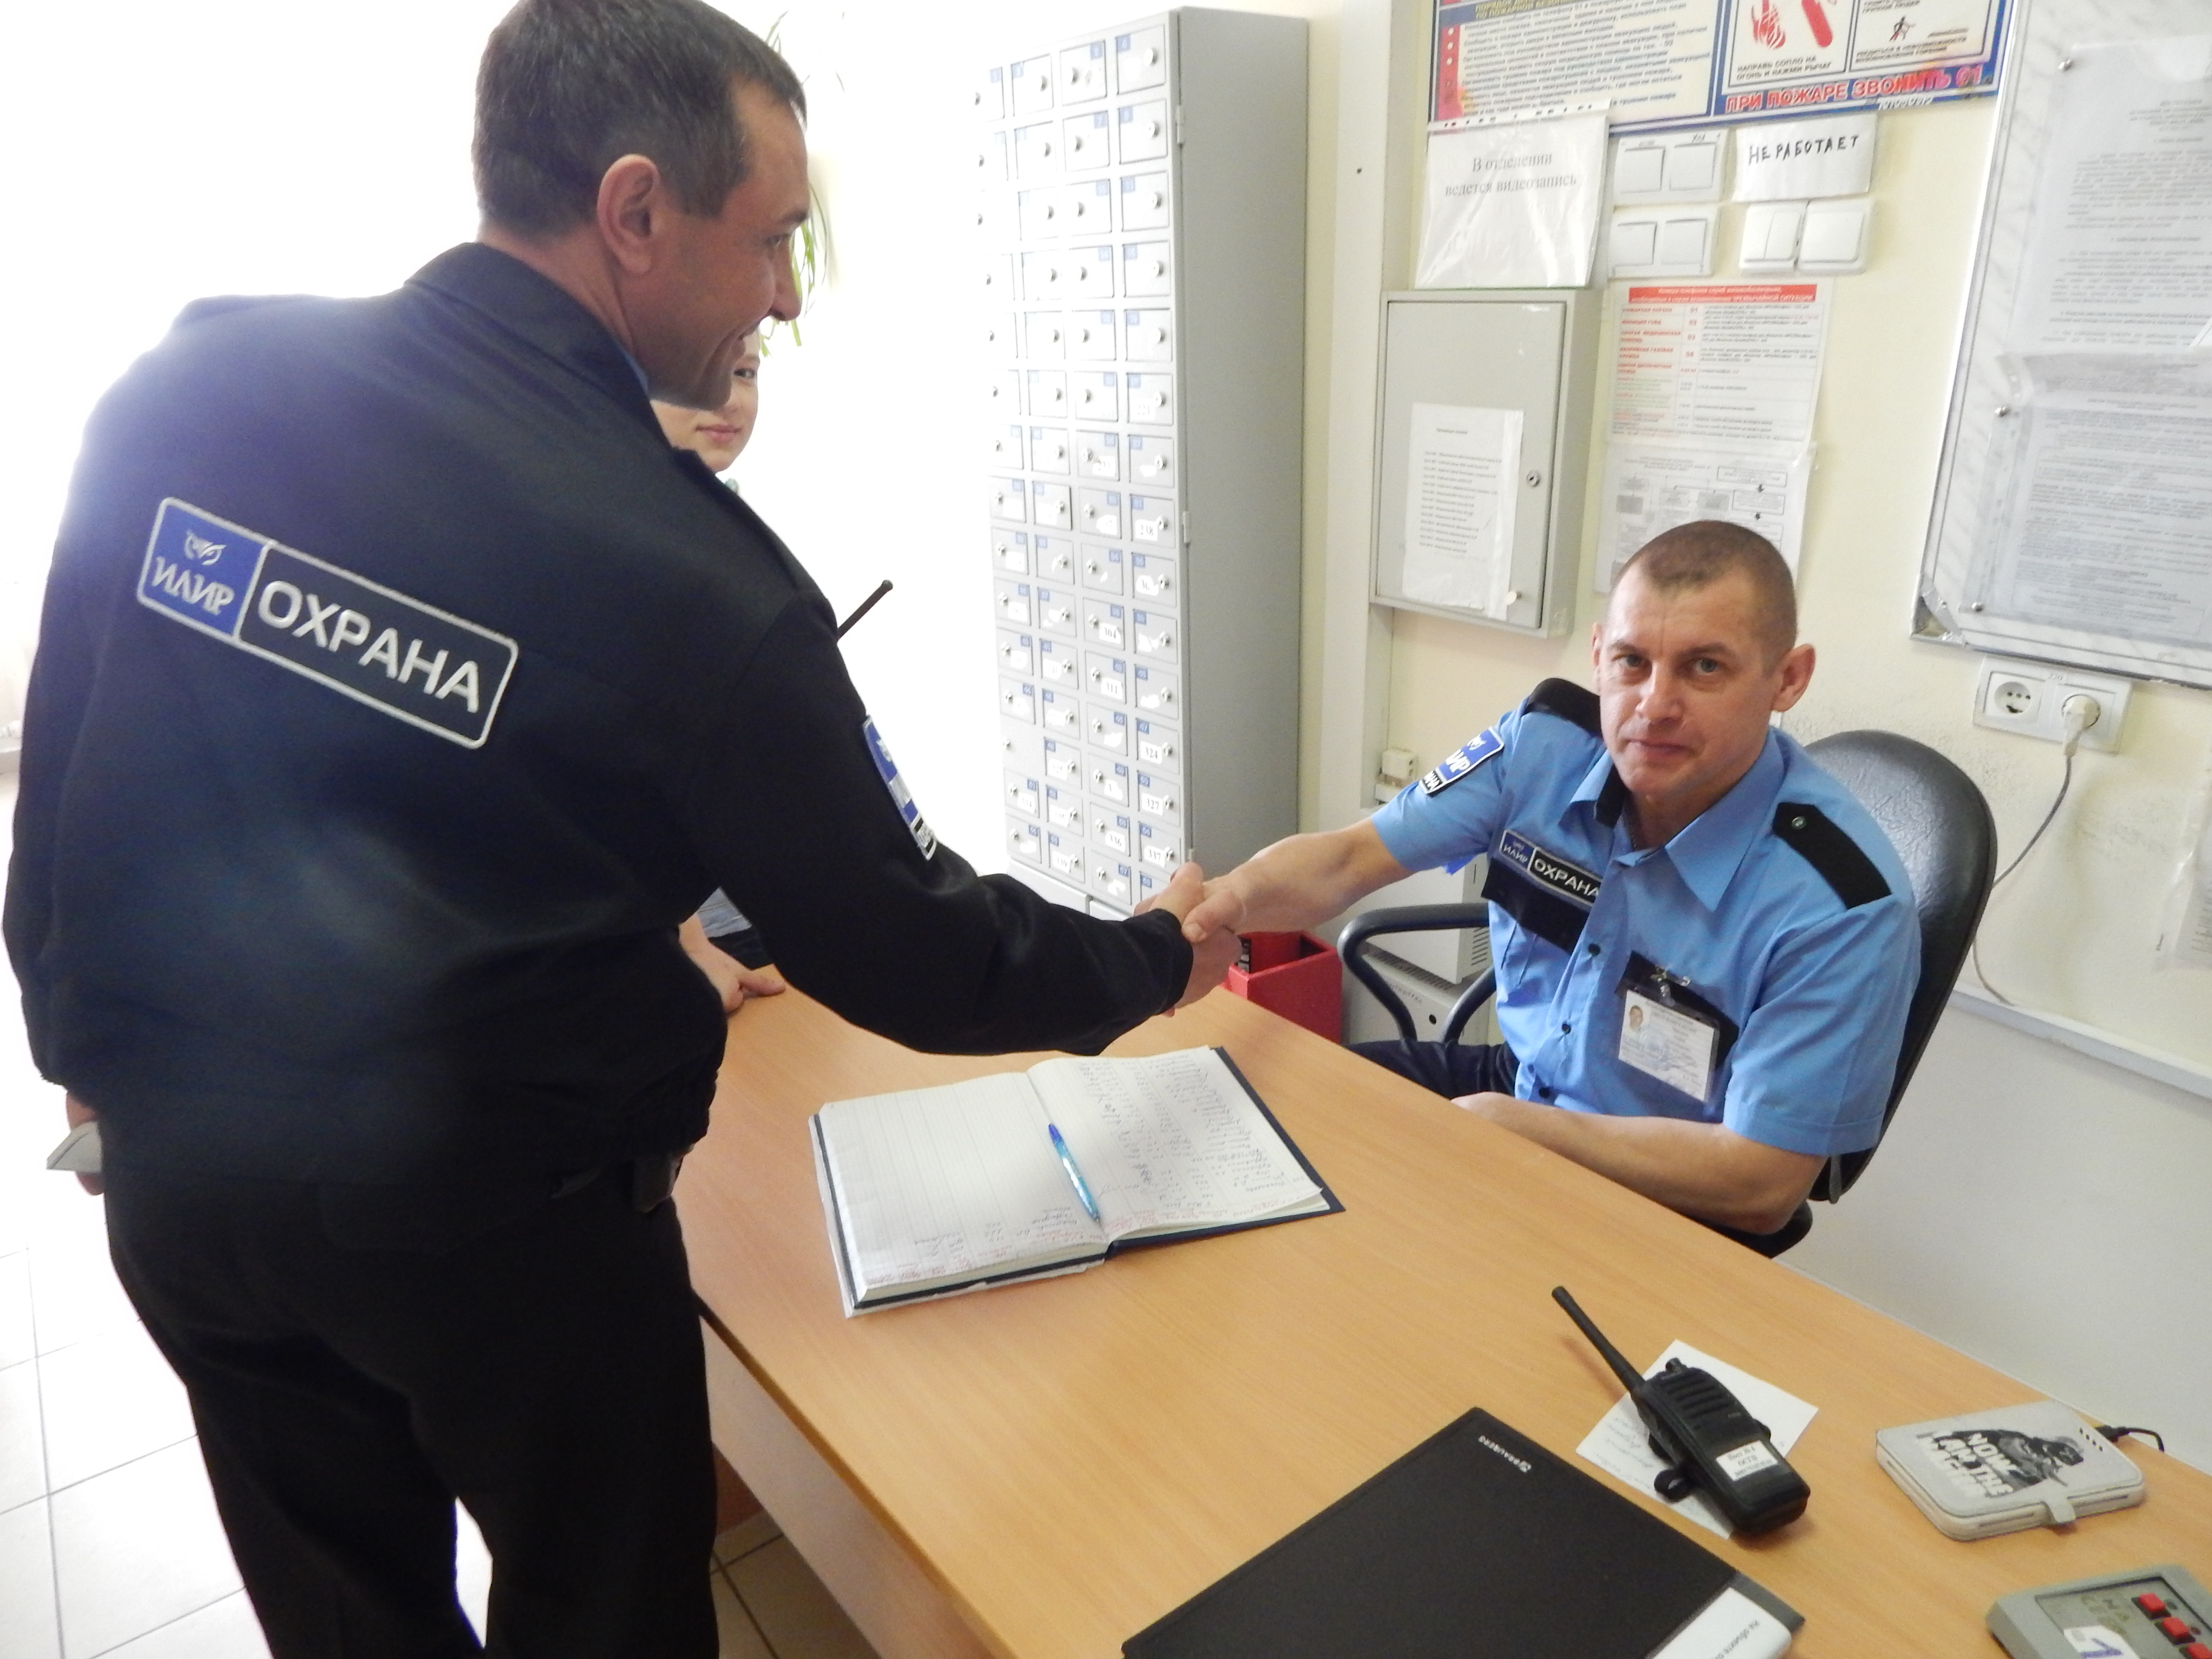 Охранная организация "Илир" взяла под охрану Ямальский многопрофильный колледж в г. Салехард